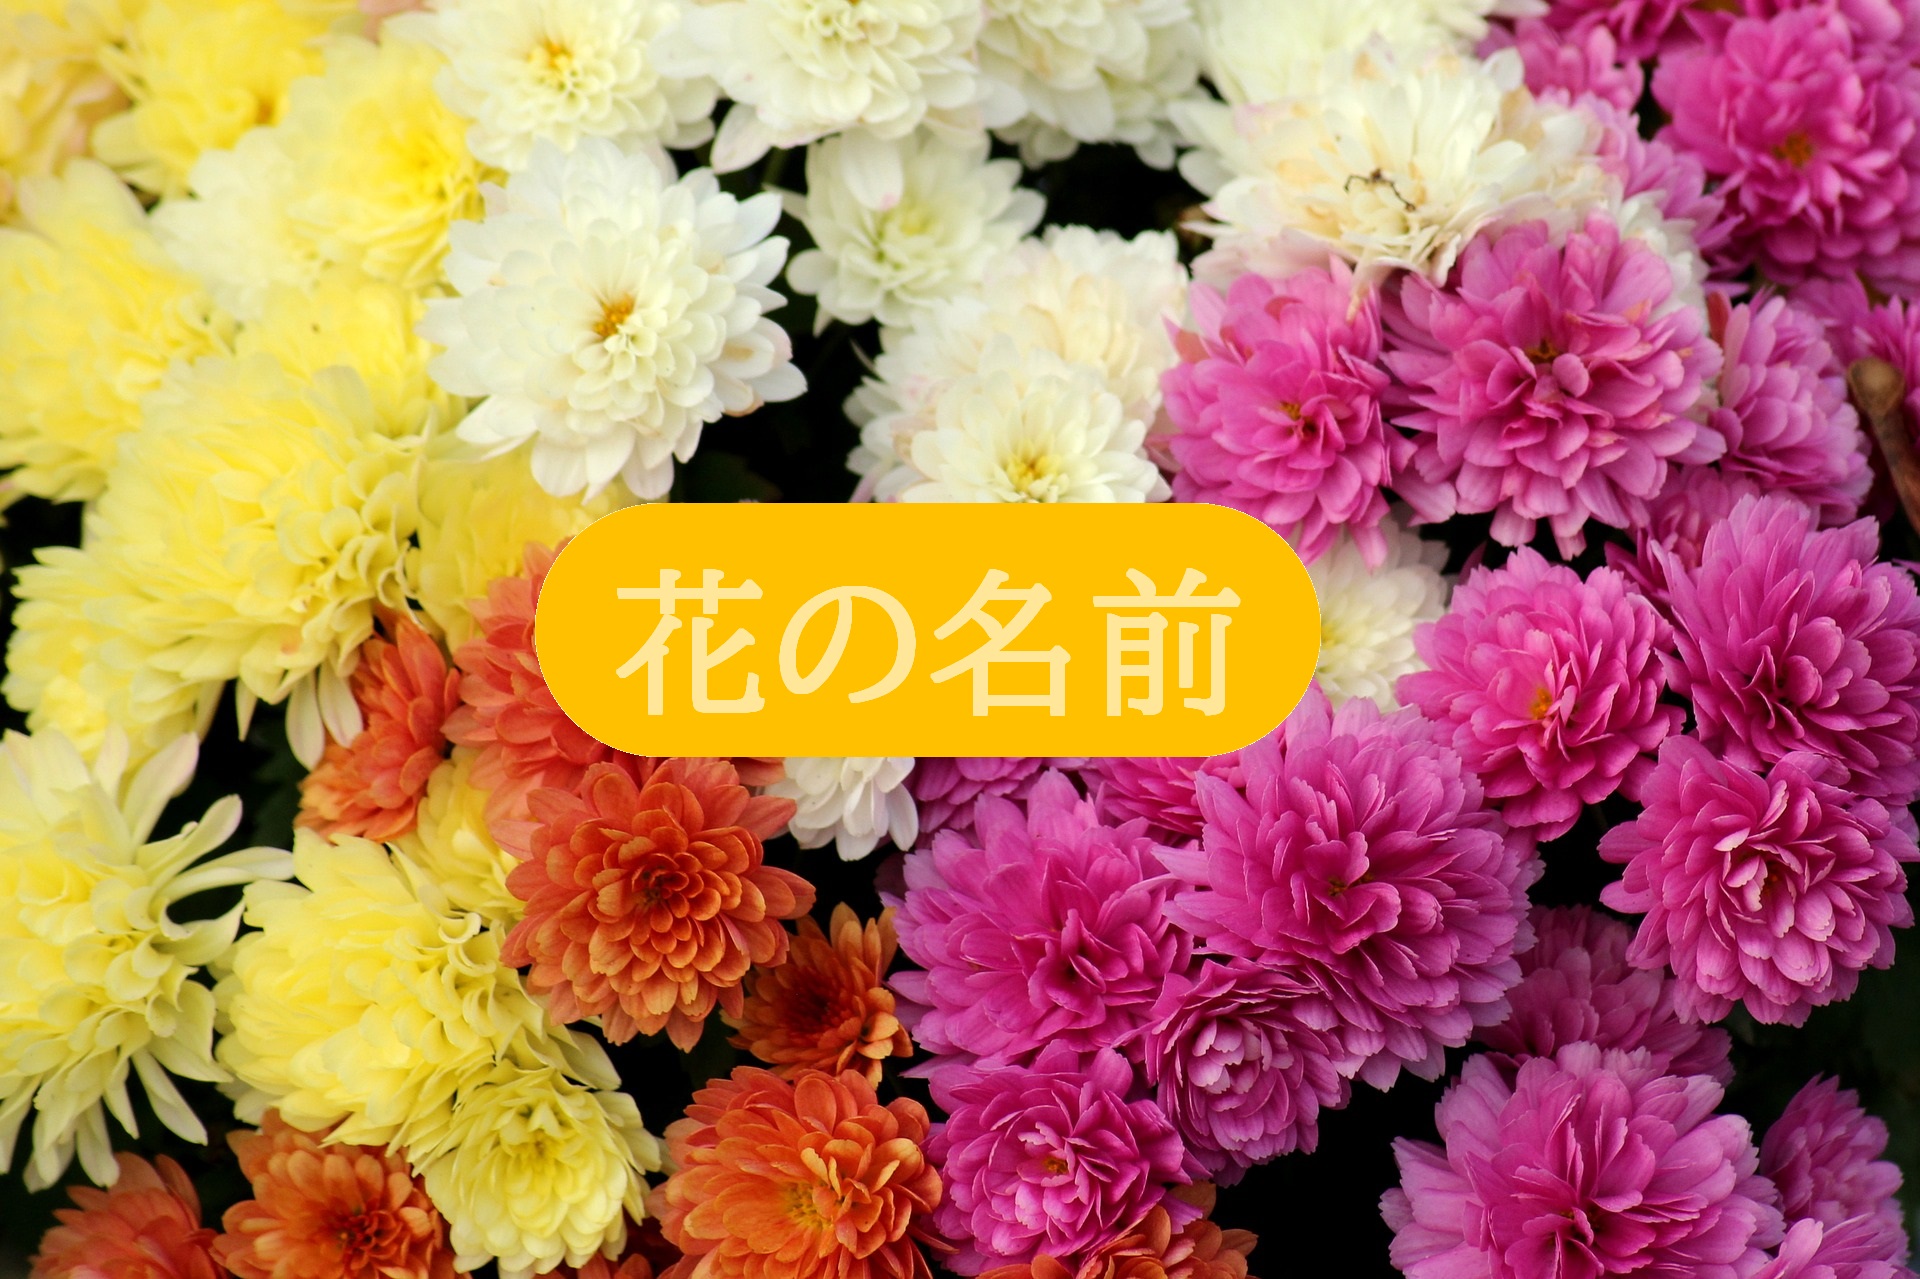 英語で何て言うんだっけ 桜 菊 藤 花の名前って意外と難しい よしのブログ